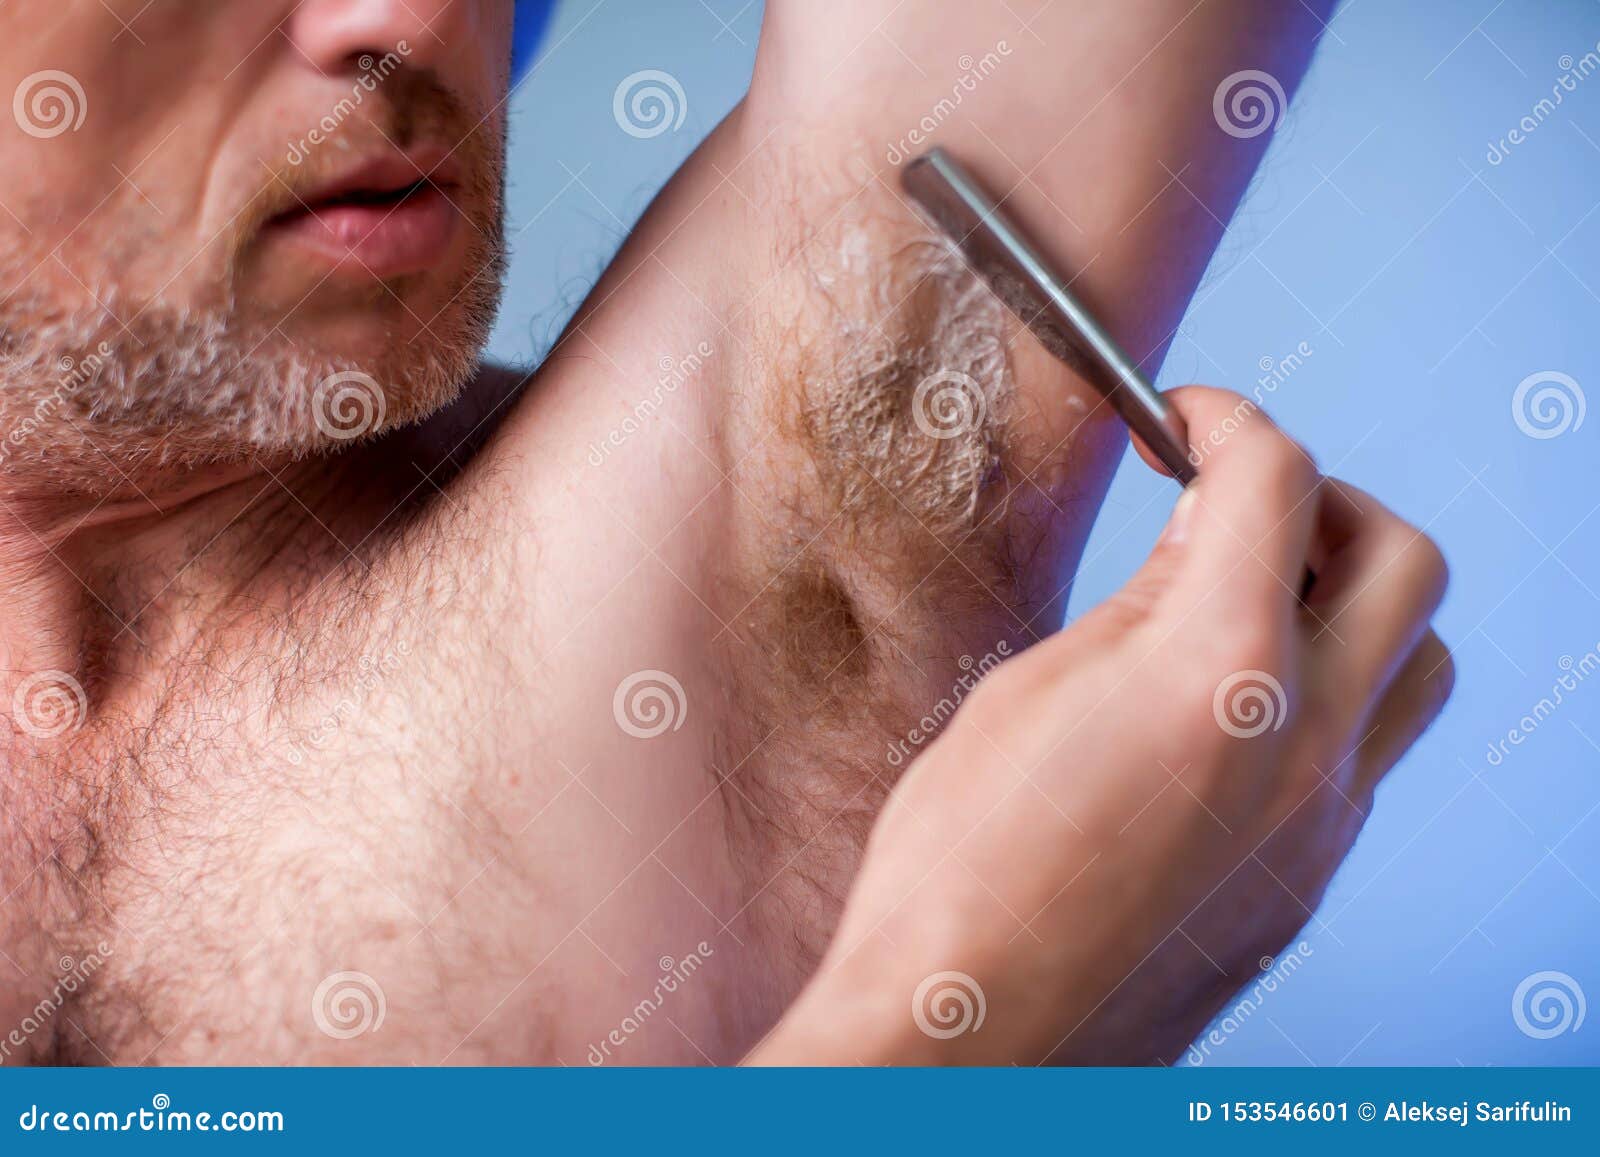 Как правильно брить интимную зону мужчине бритвой. Мужская эпиляция. Эпиляция для мужчин. Волосы подмышками у мужчин.